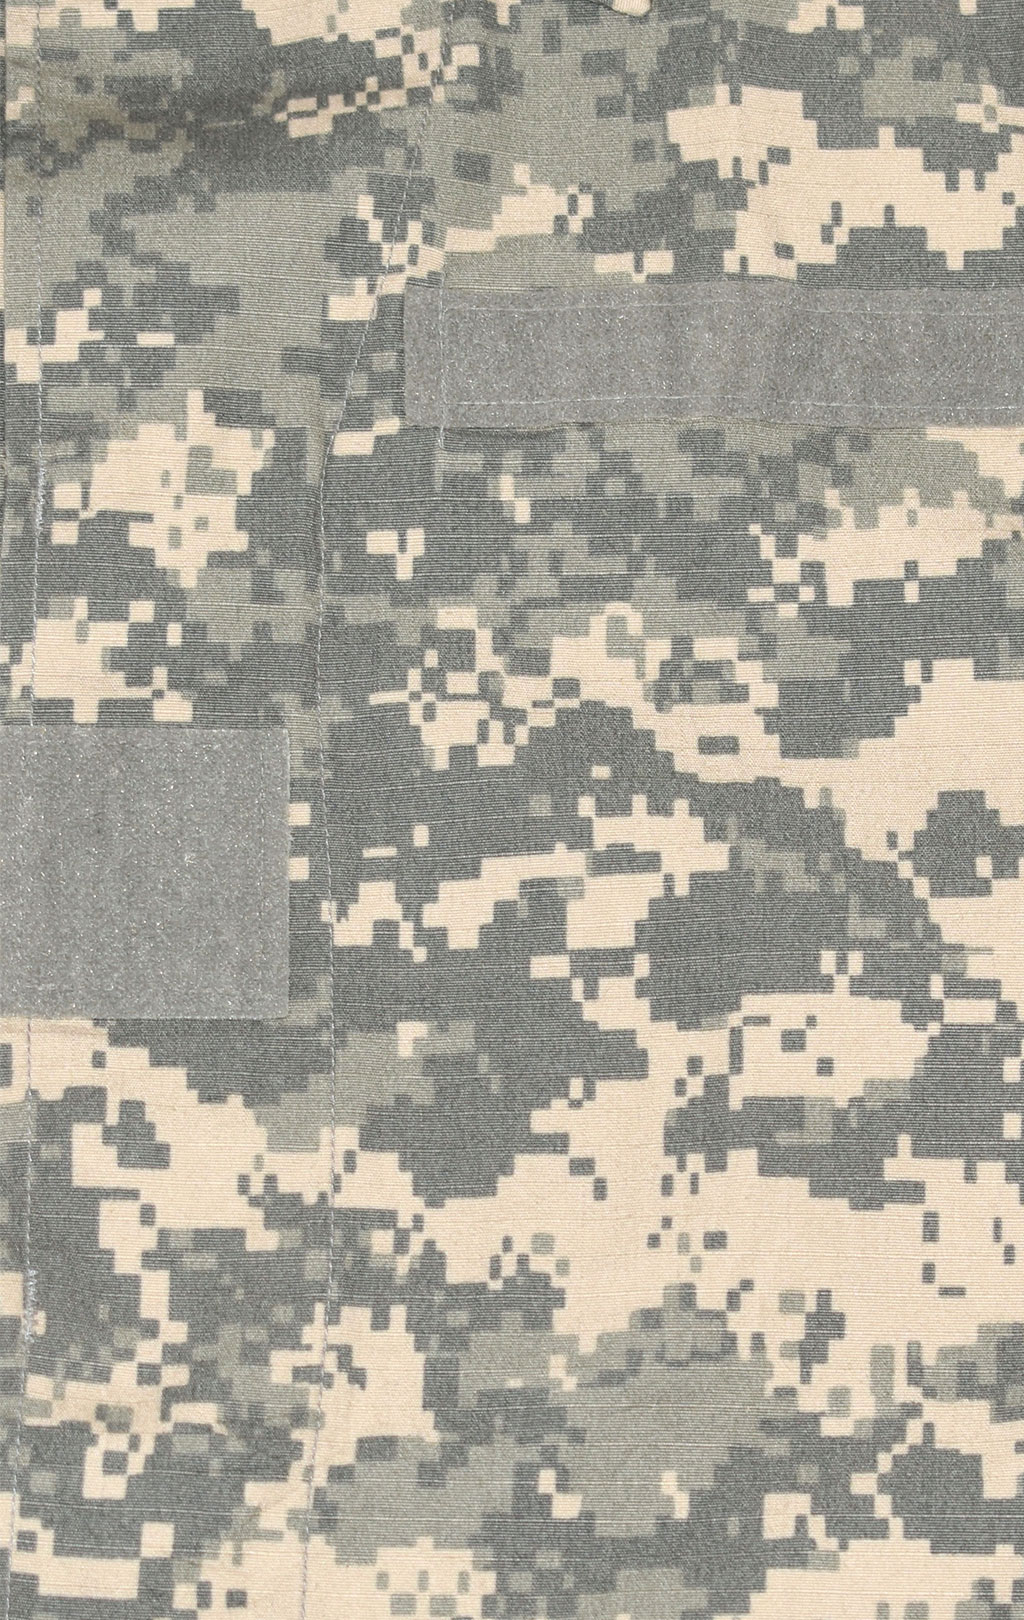 Рубашка армейская жен. acu США